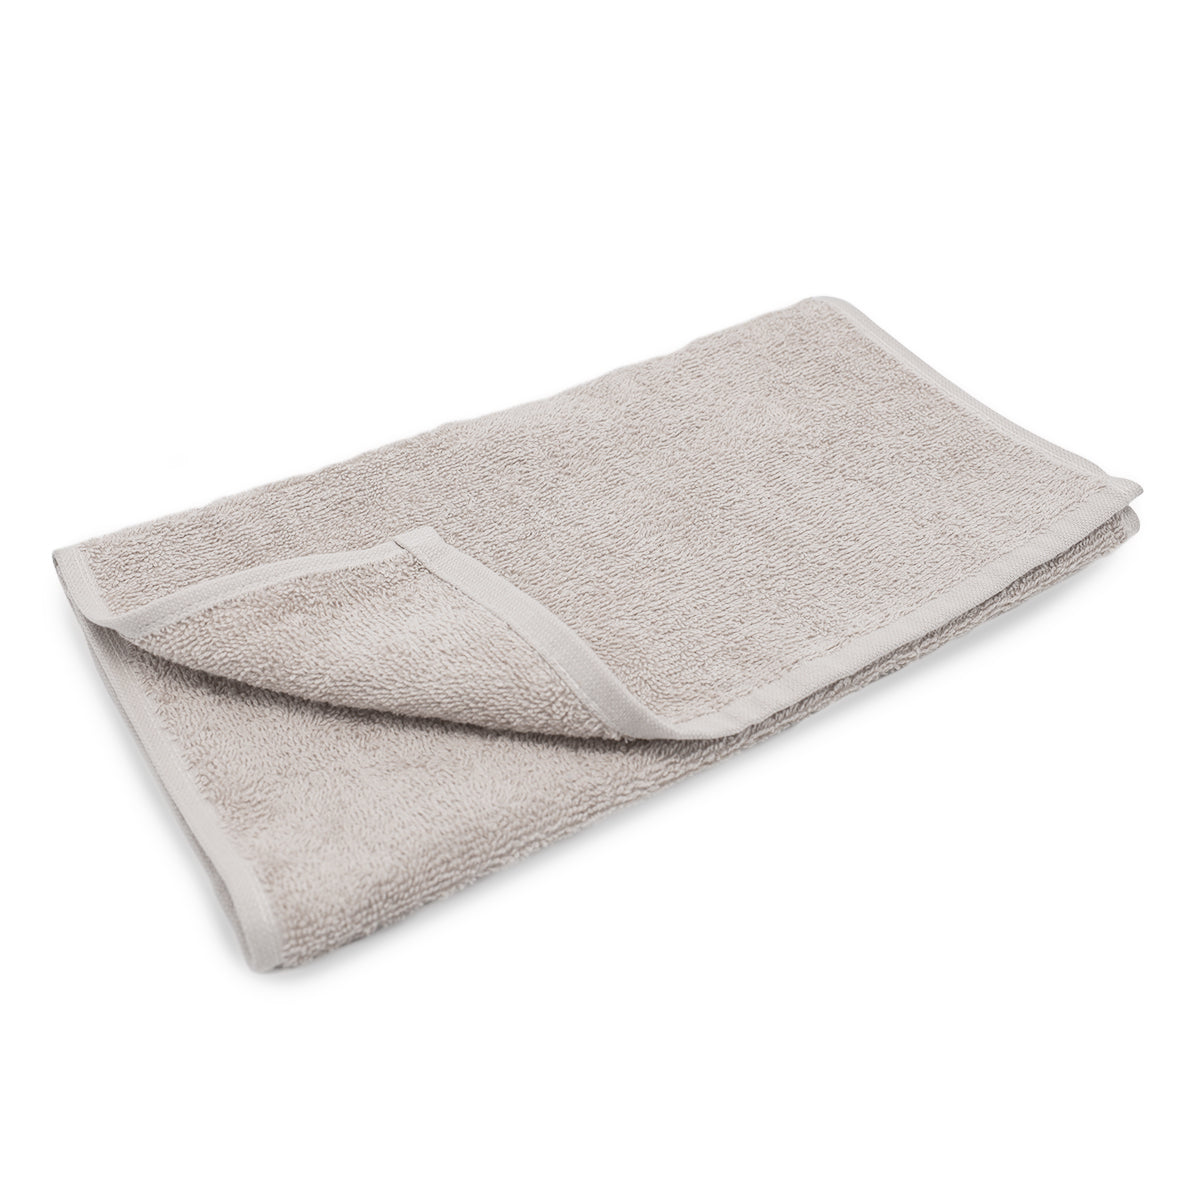 (10 stk.) Grønlandsk ansigtstørklæde til massage - 30 x 50 cm - Sand